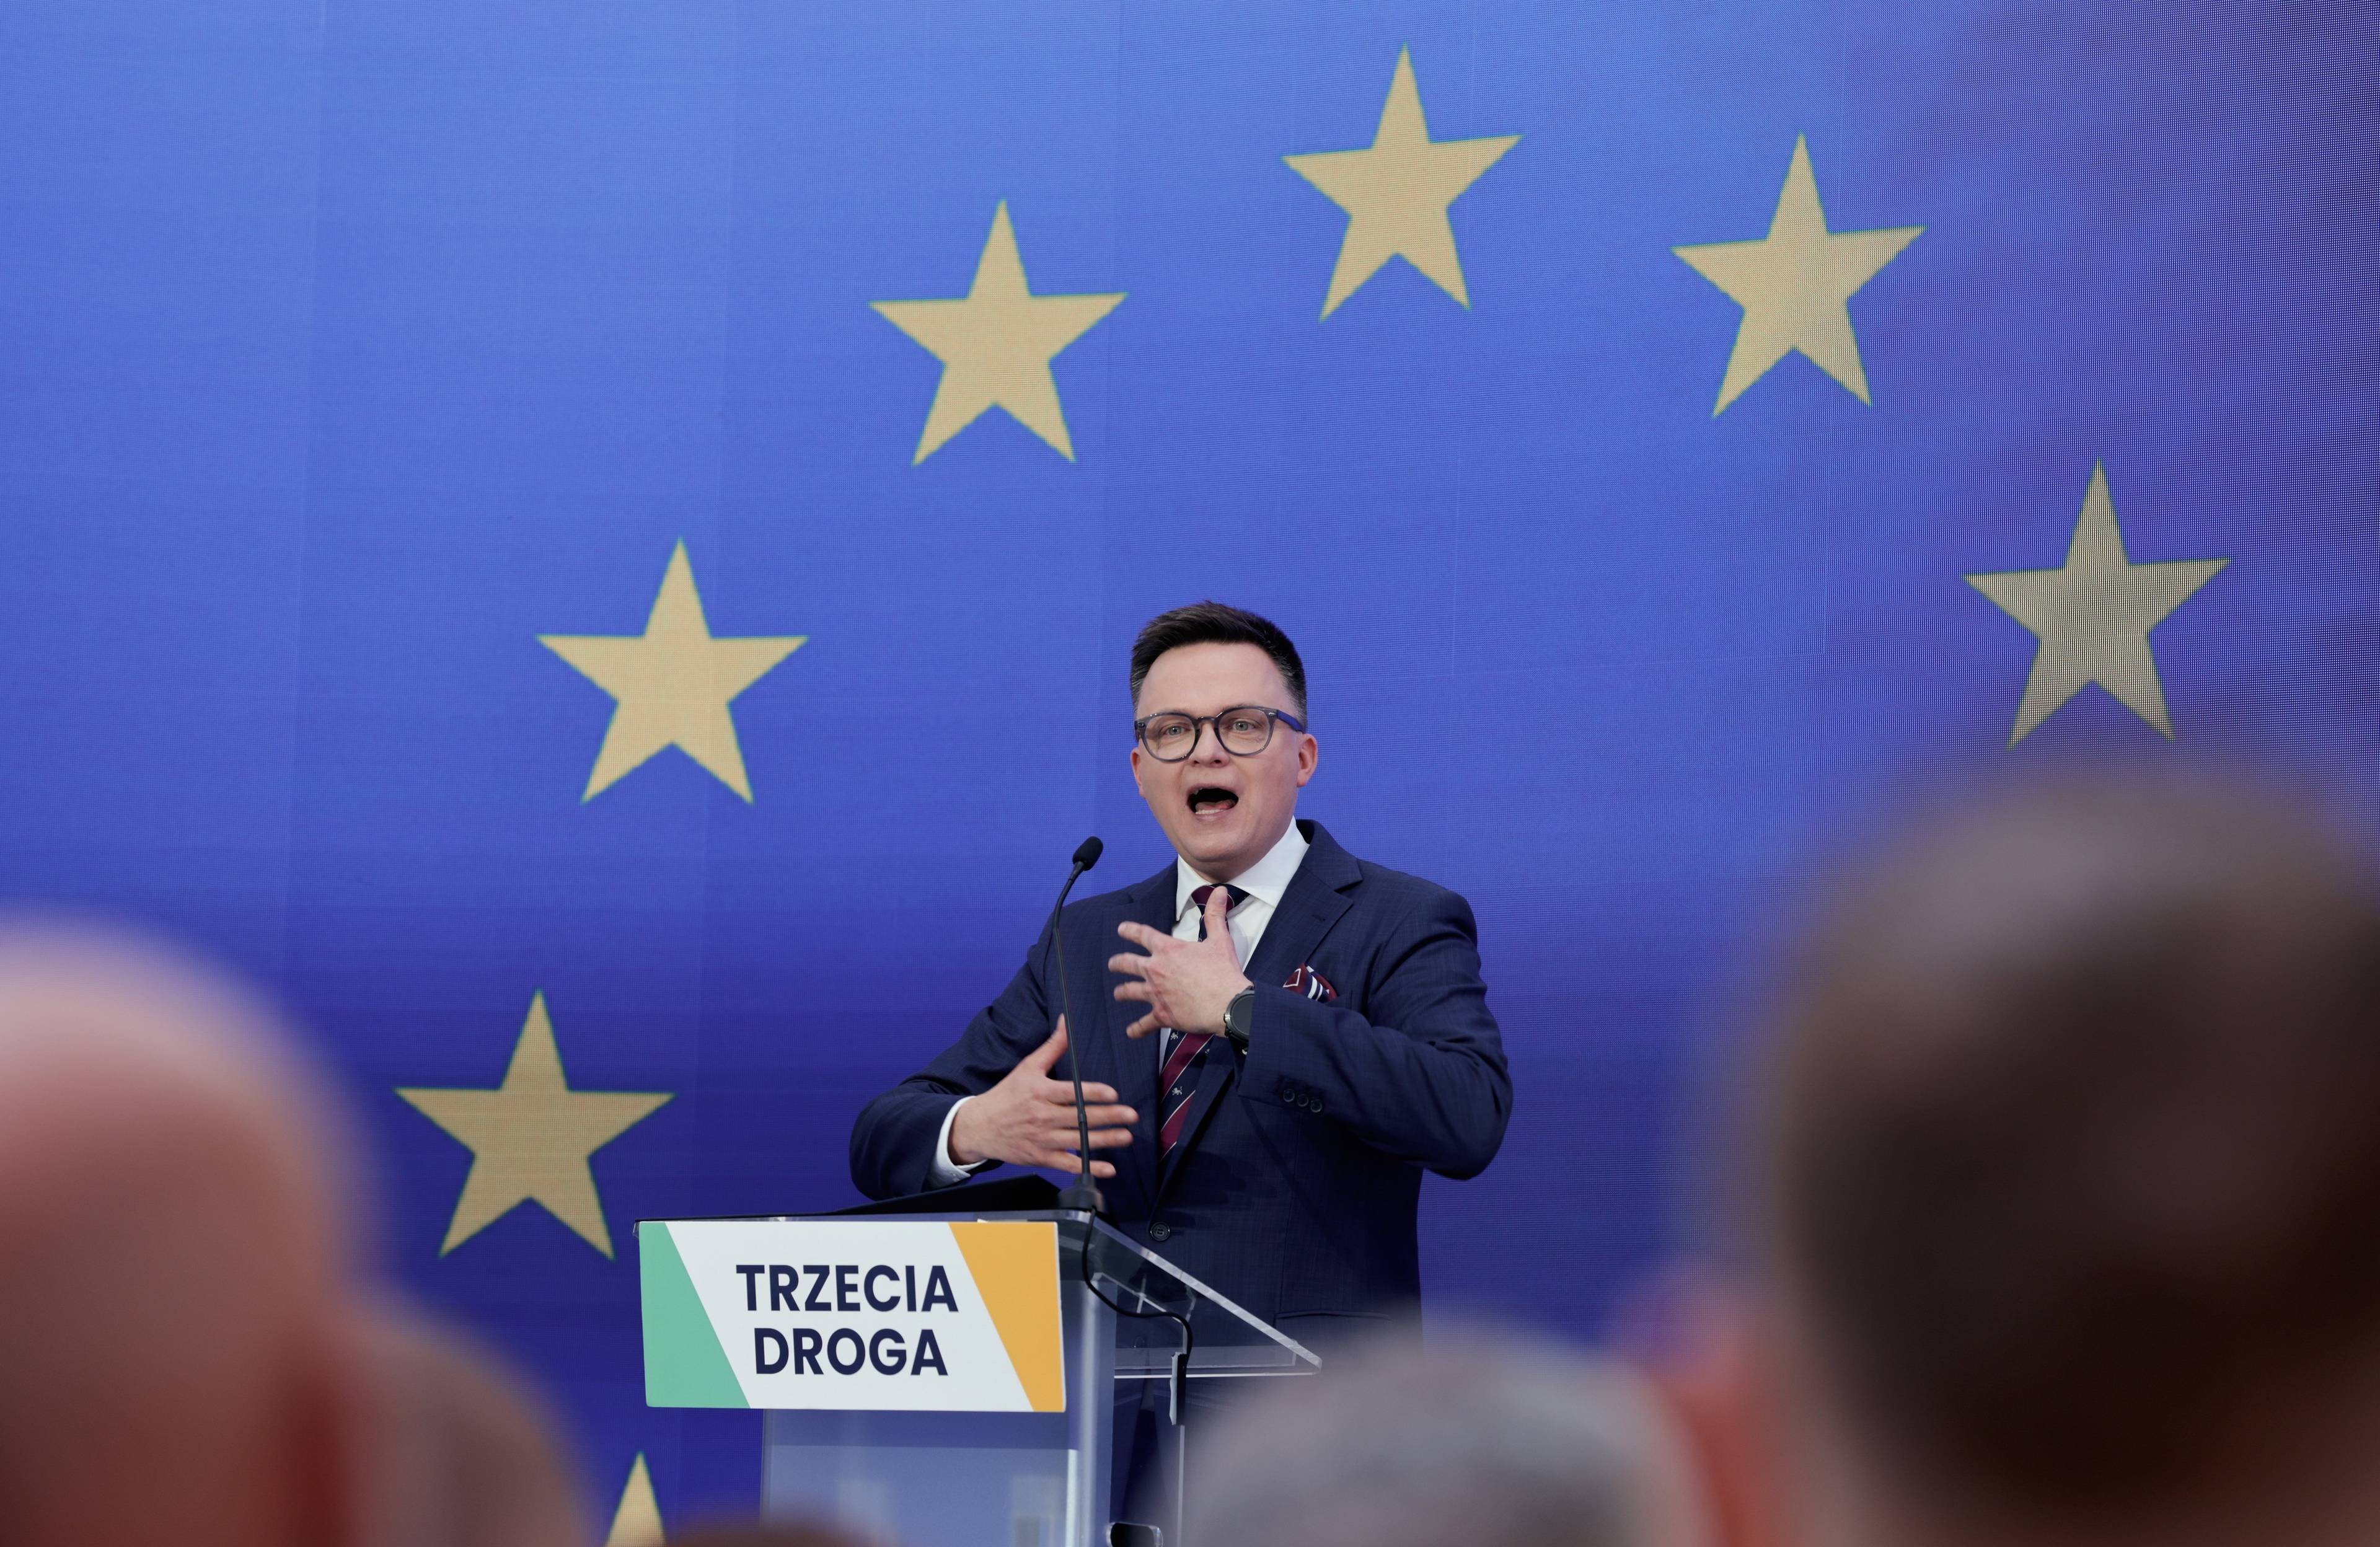 Szymon Hołownia przemawia na konwencji przed eurowyborami. Stoi za mównicą z napisem "Trzecia Droga", za nim niebieskie tło i gwiazdki z flagi Unii Europejskiej. Wybory europejskie